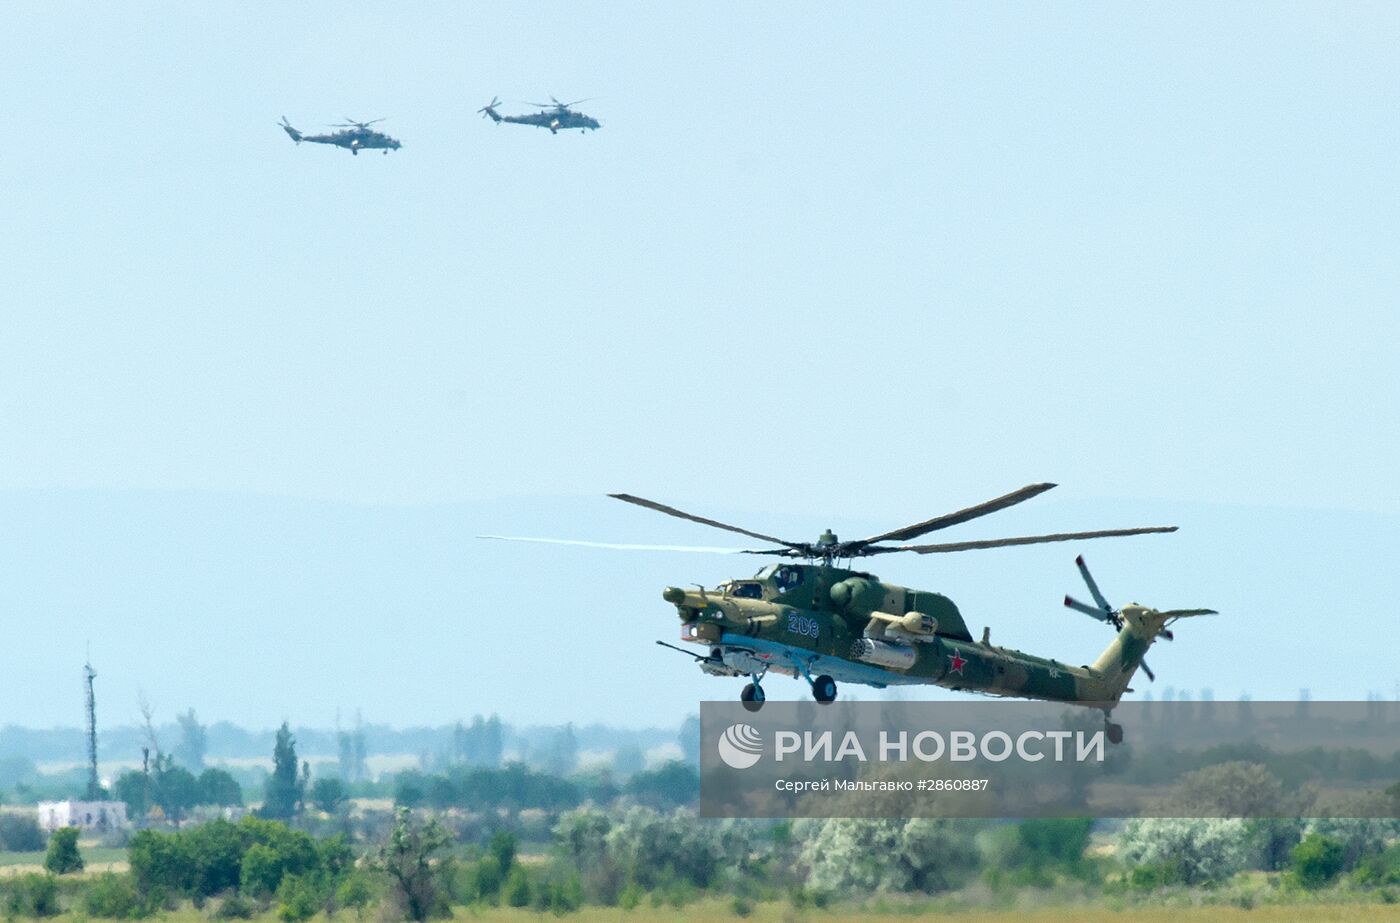 Подготовка к Всероссийским соревнованиям военных летчиков "Авиадартс-2016" в Крыму